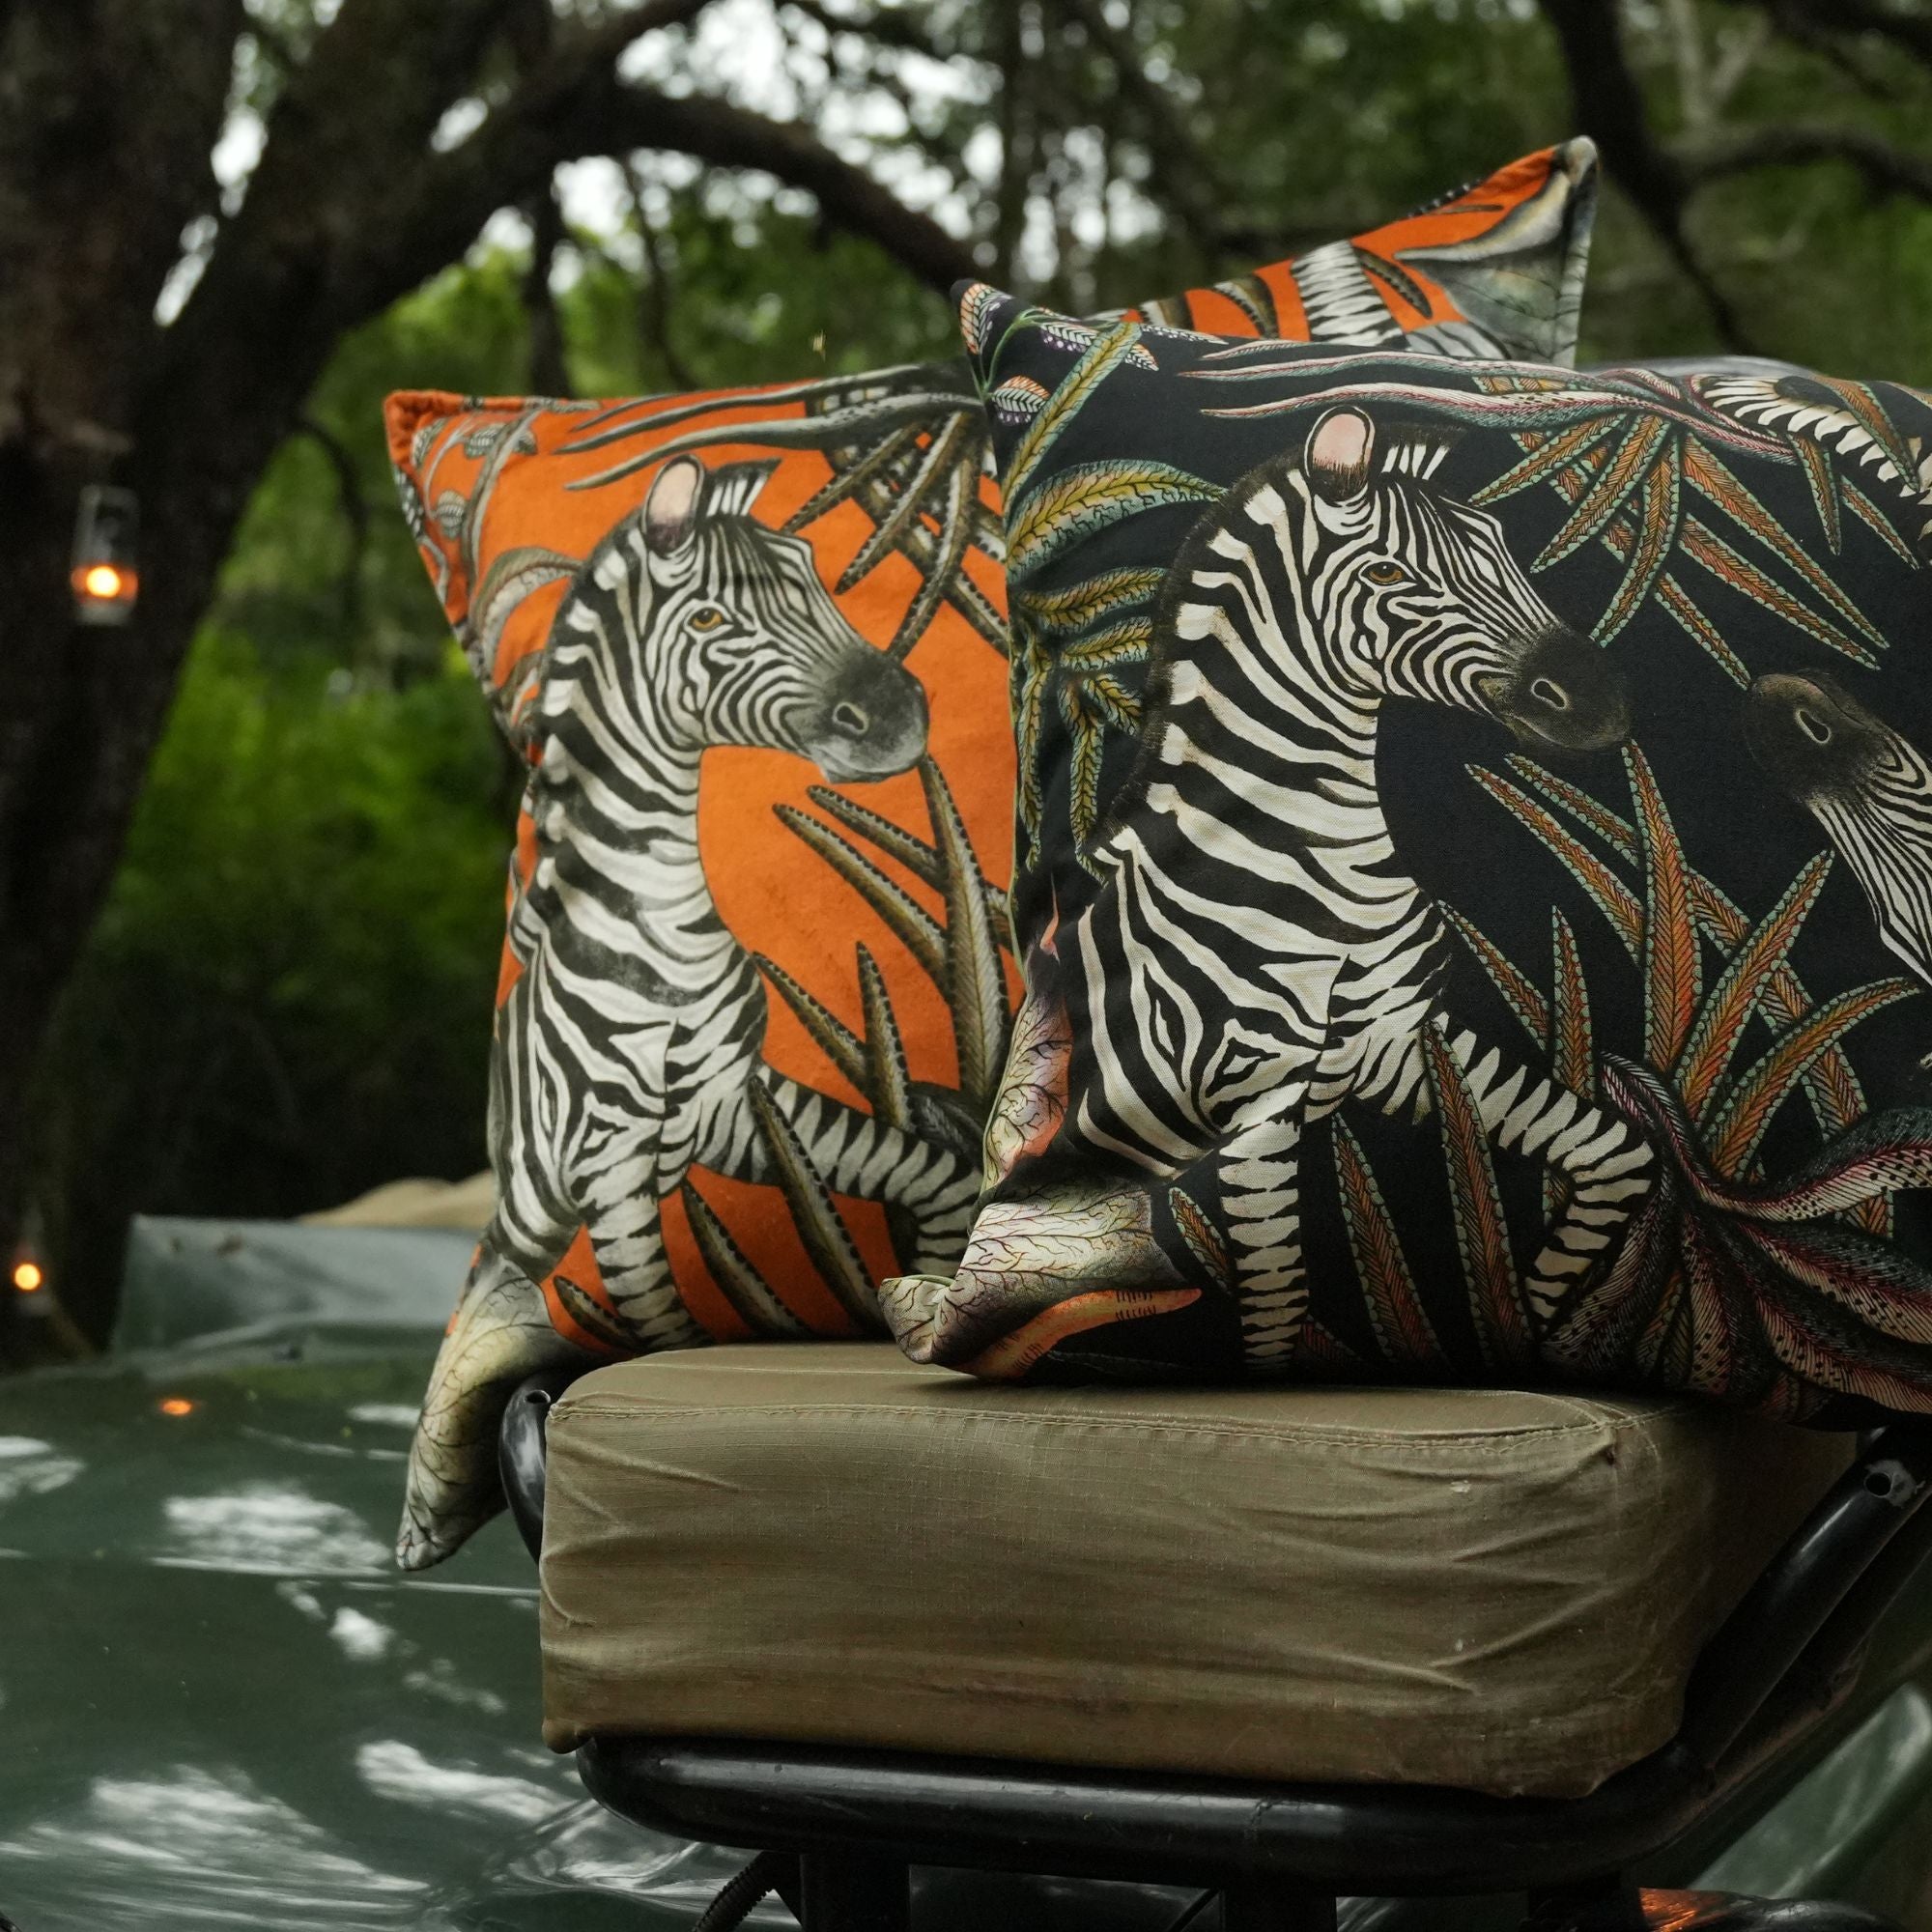 Thanda Stripe Pillow - Velvet - Flame